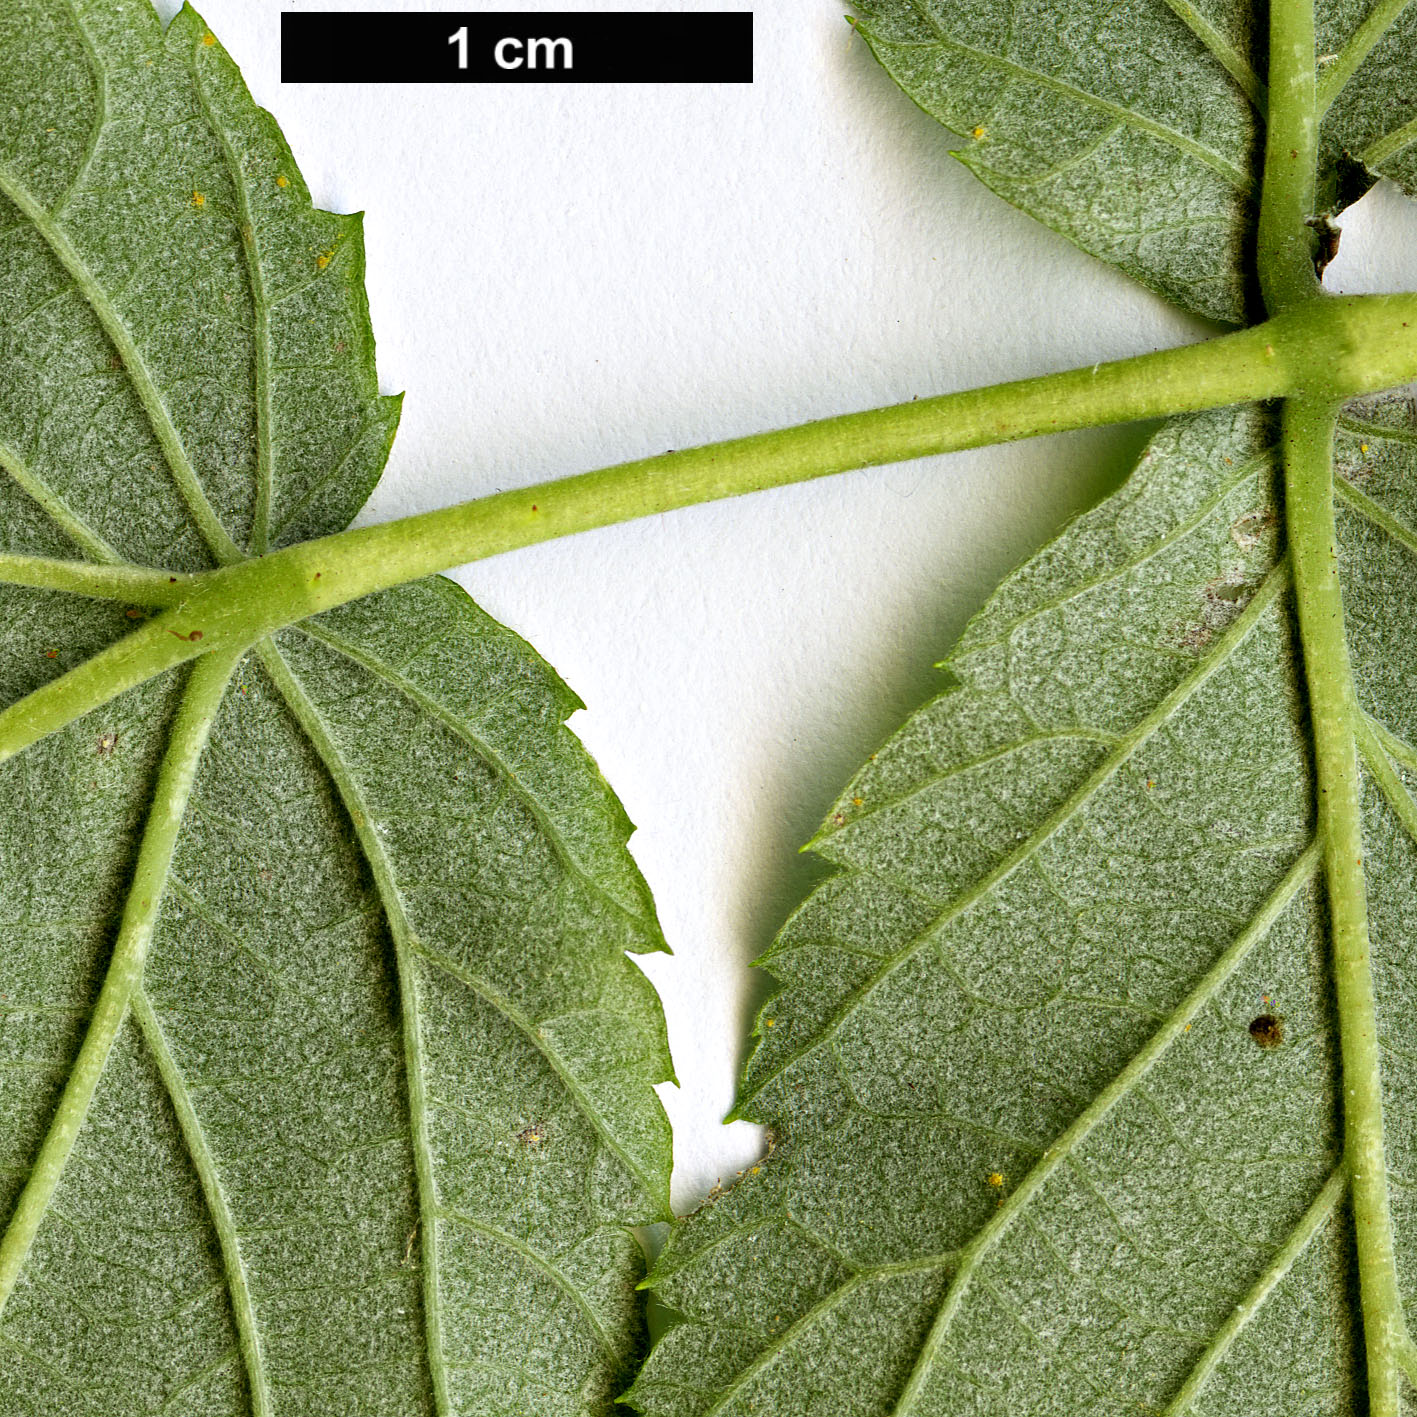 High resolution image: Family: Rosaceae - Genus: Rubus - Taxon: leucodermis